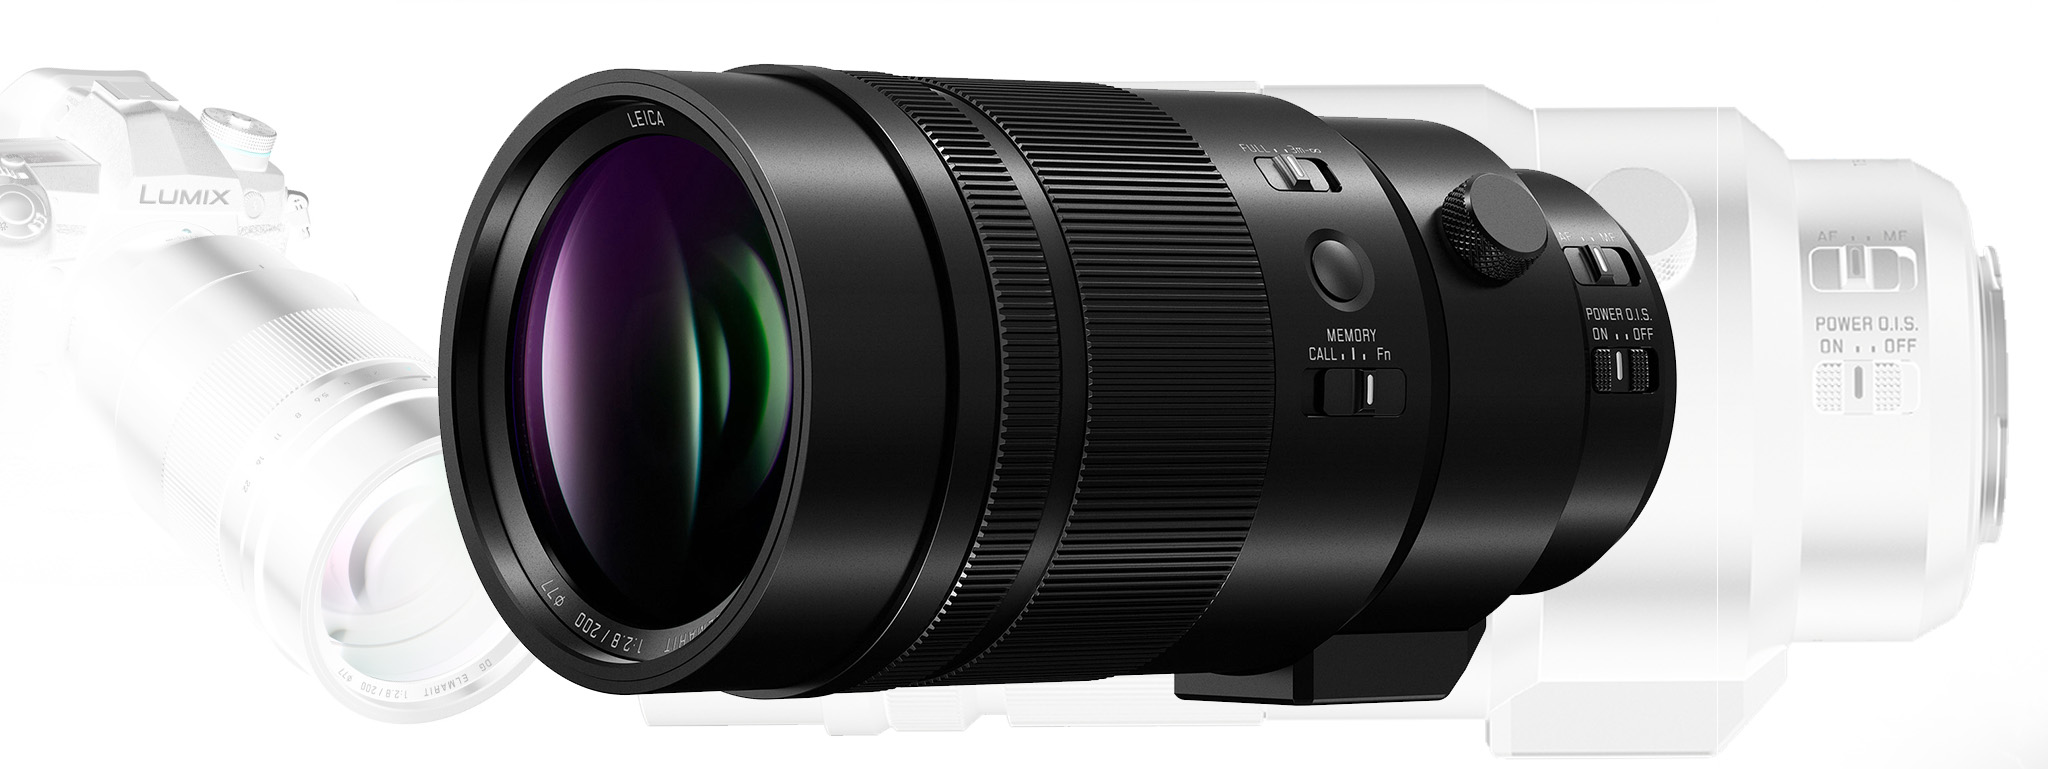 Panasonic ra mắt ống kính Leica DG Elmarit 200mm f/2.8 Power O.I.S: Nhỏ và nhẹ, giá $3000